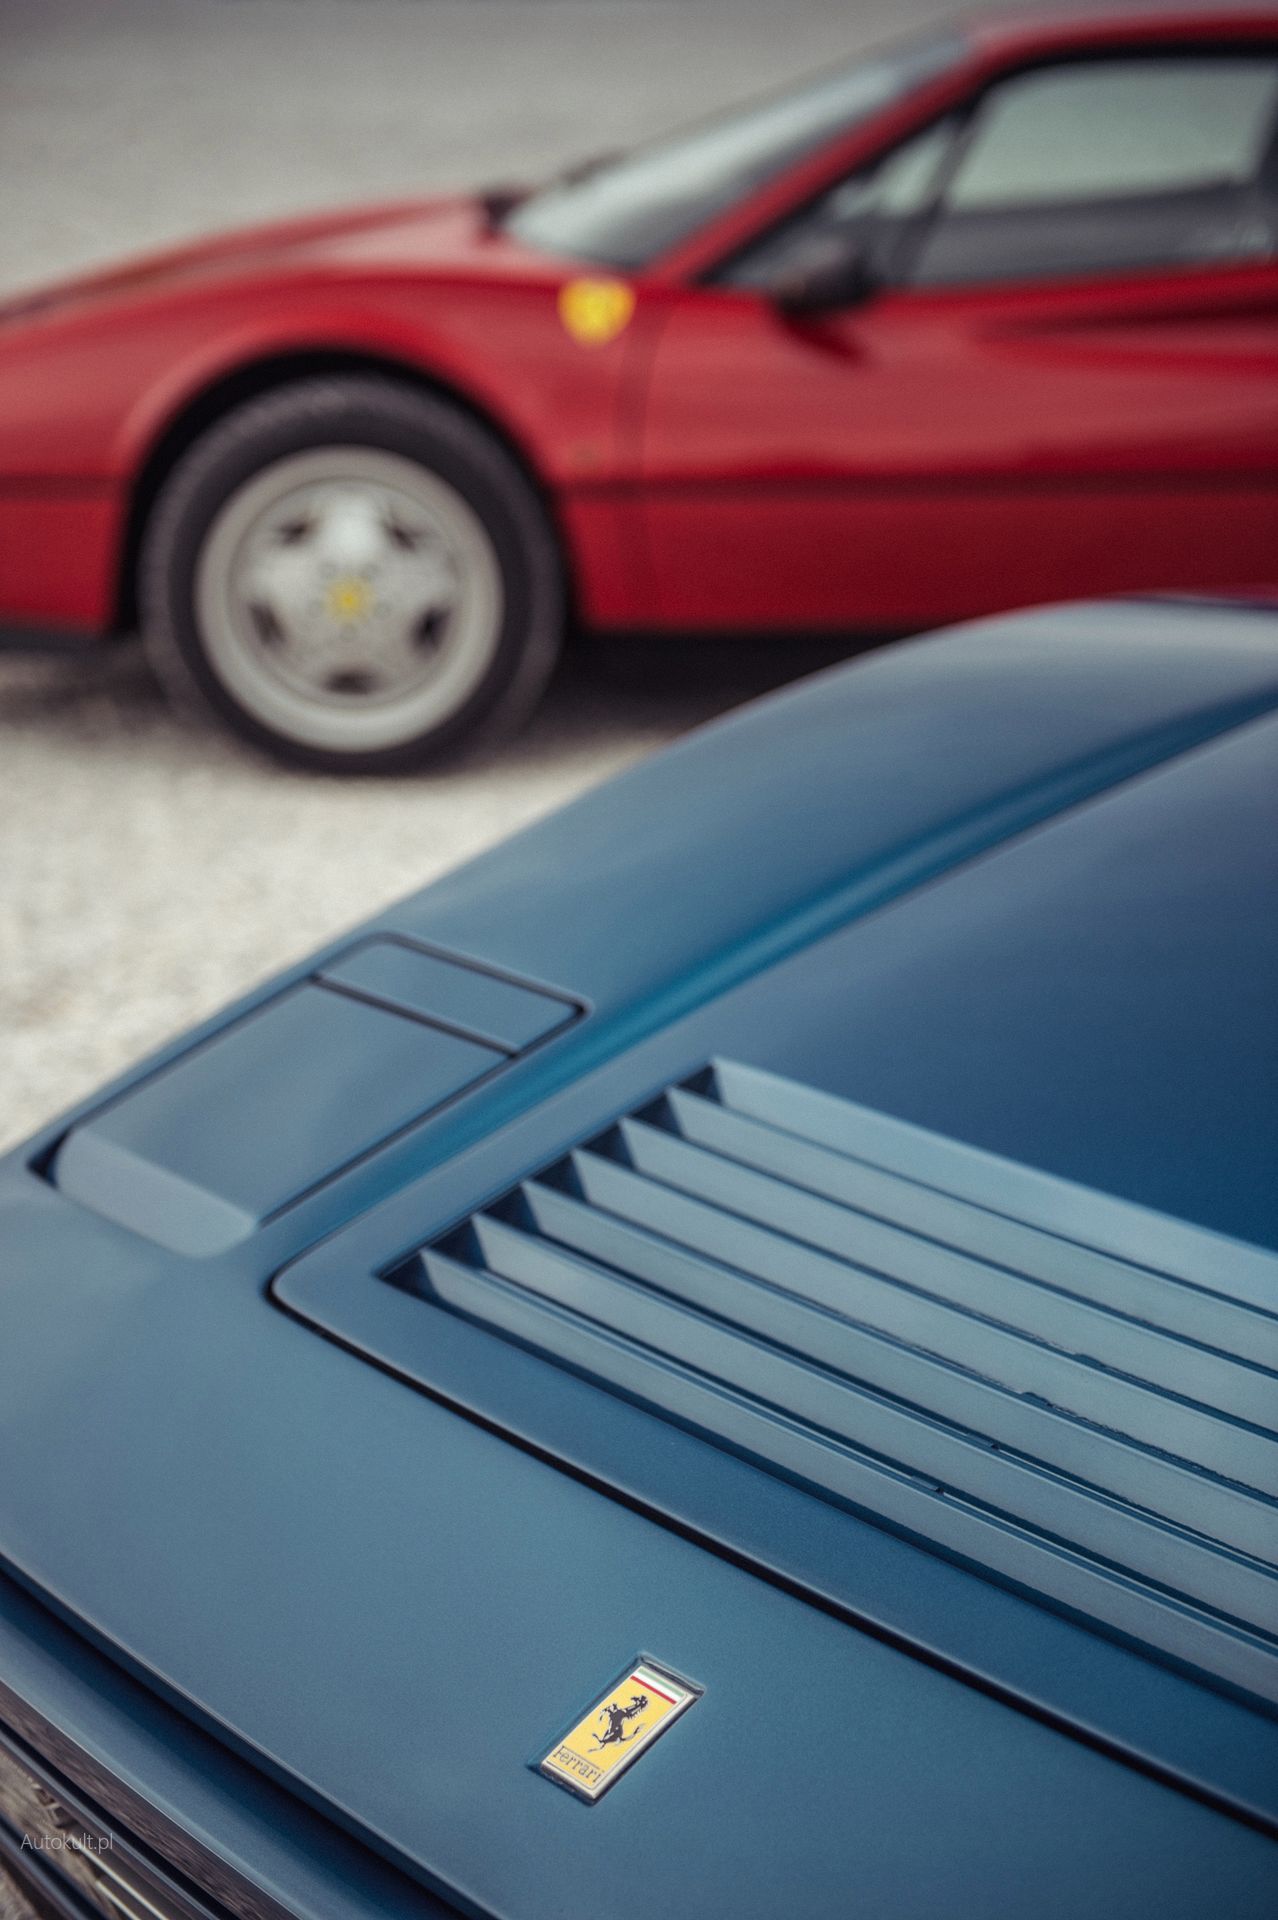 Ferrari 328 GTB (1989) vs Ferrari GTB Turbo (1989) (fot. Błażej Żuławski)